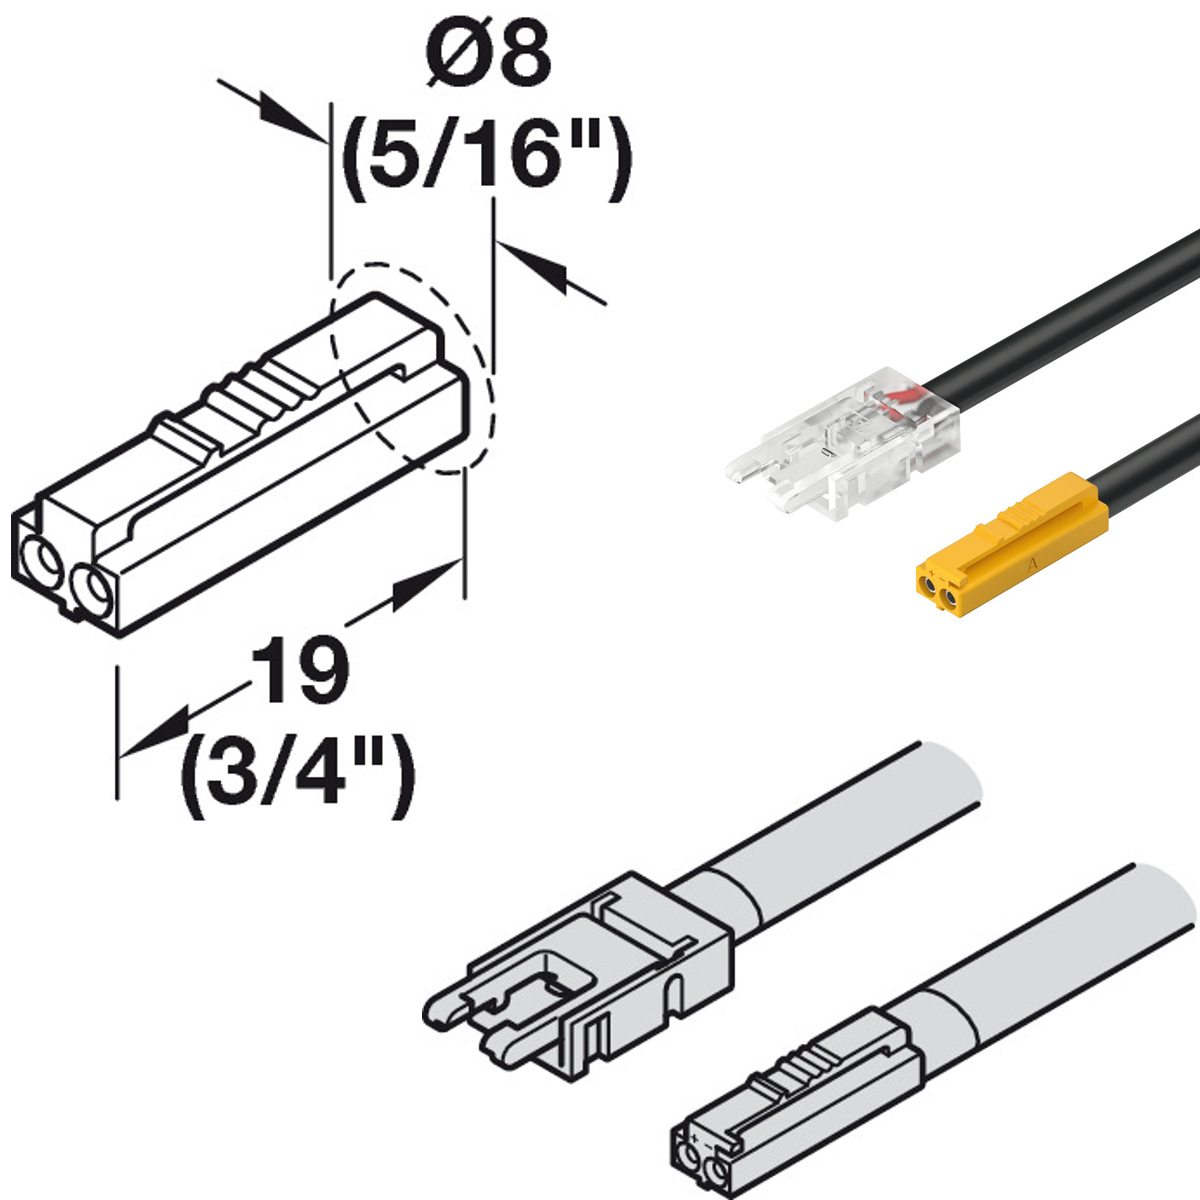 Connecting Lead für loox5 12v Modular Lichter mit Snap-In Stecker 1m/2m lang 